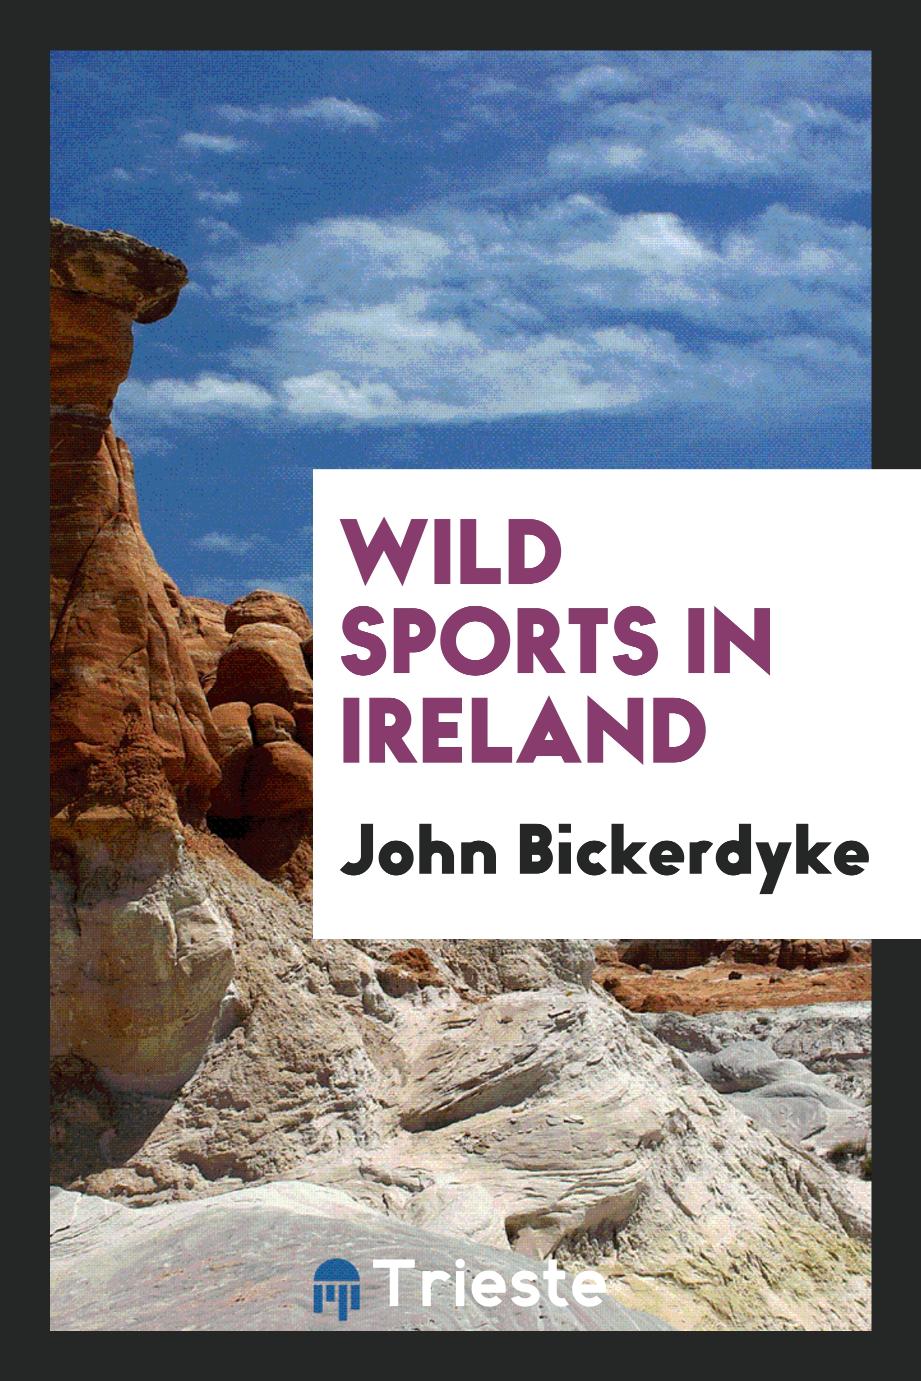 Wild sports in Ireland